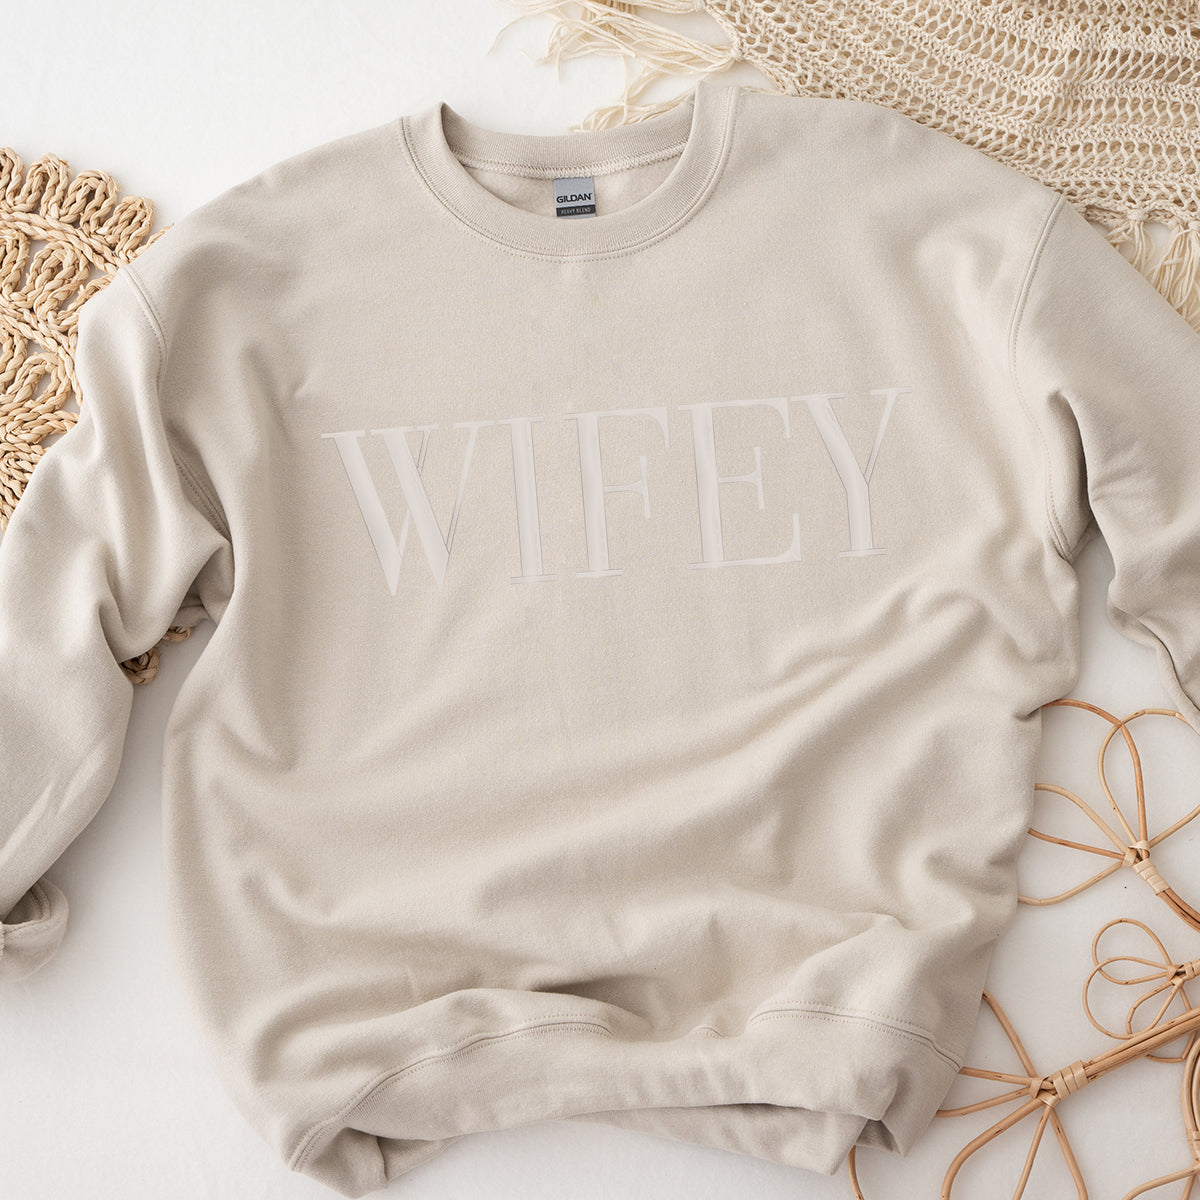 Embroidered WIFEY Sweatshirt